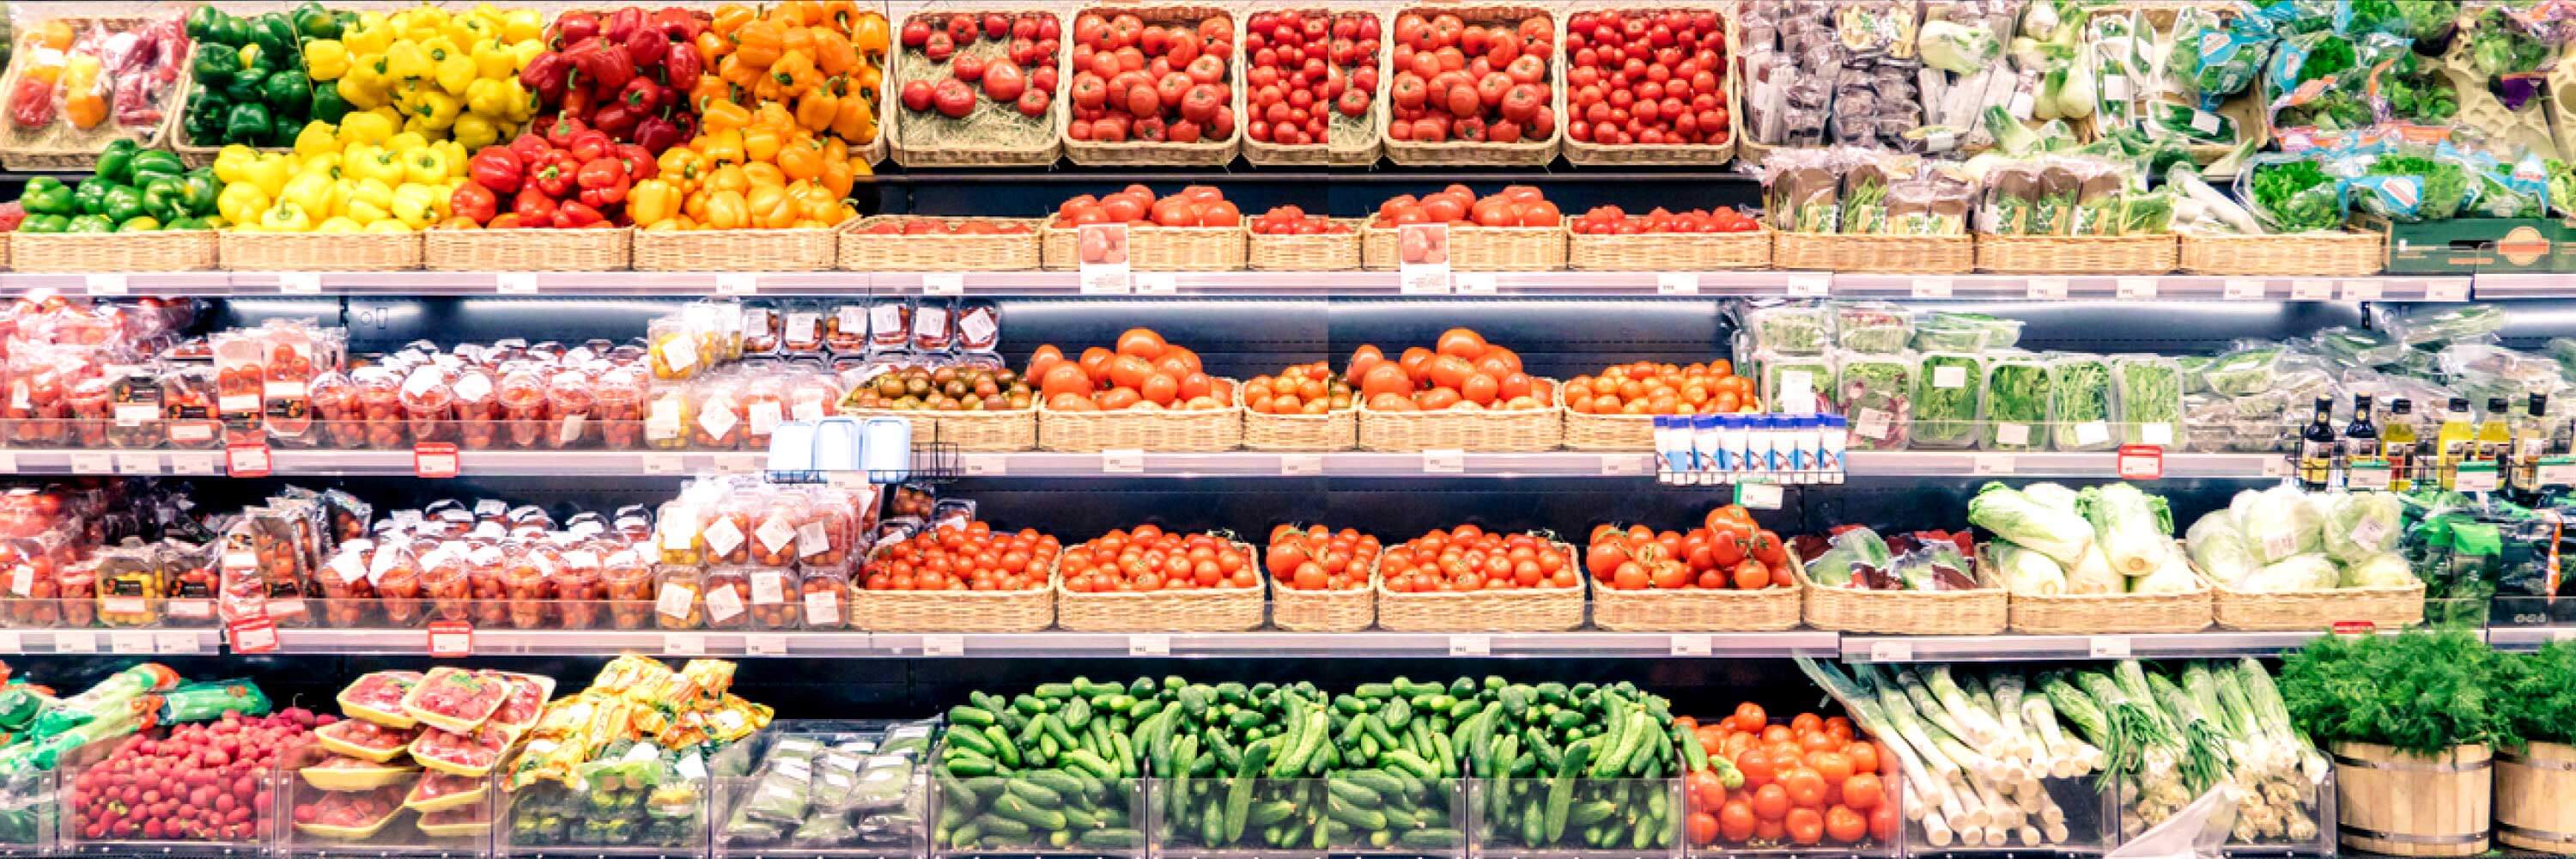 Une variété de fruits et de légumes est exposée dans un magasin d'alimentation